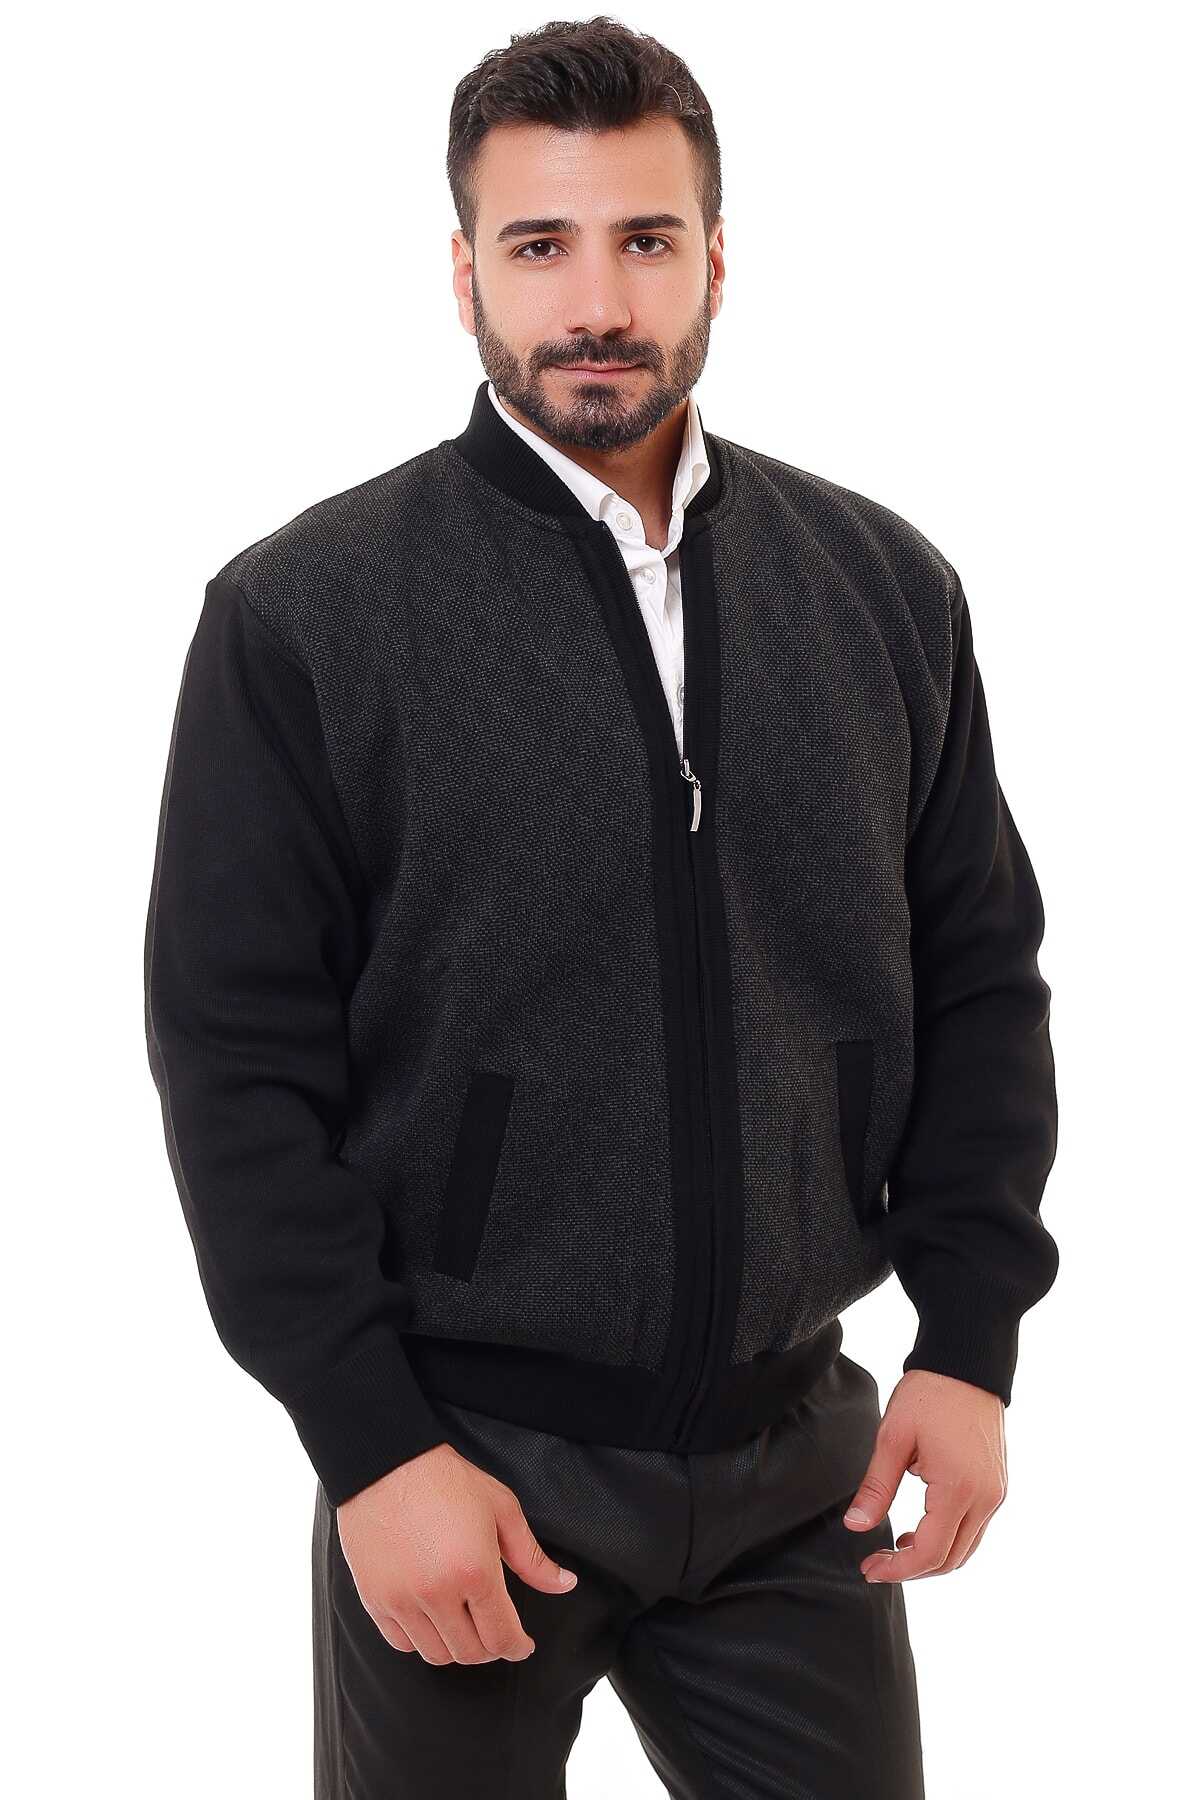 ژاکت مردانه سایز بزرگ یقه ایستاده  جیب دار مشکی برند KARBEY TRİKO